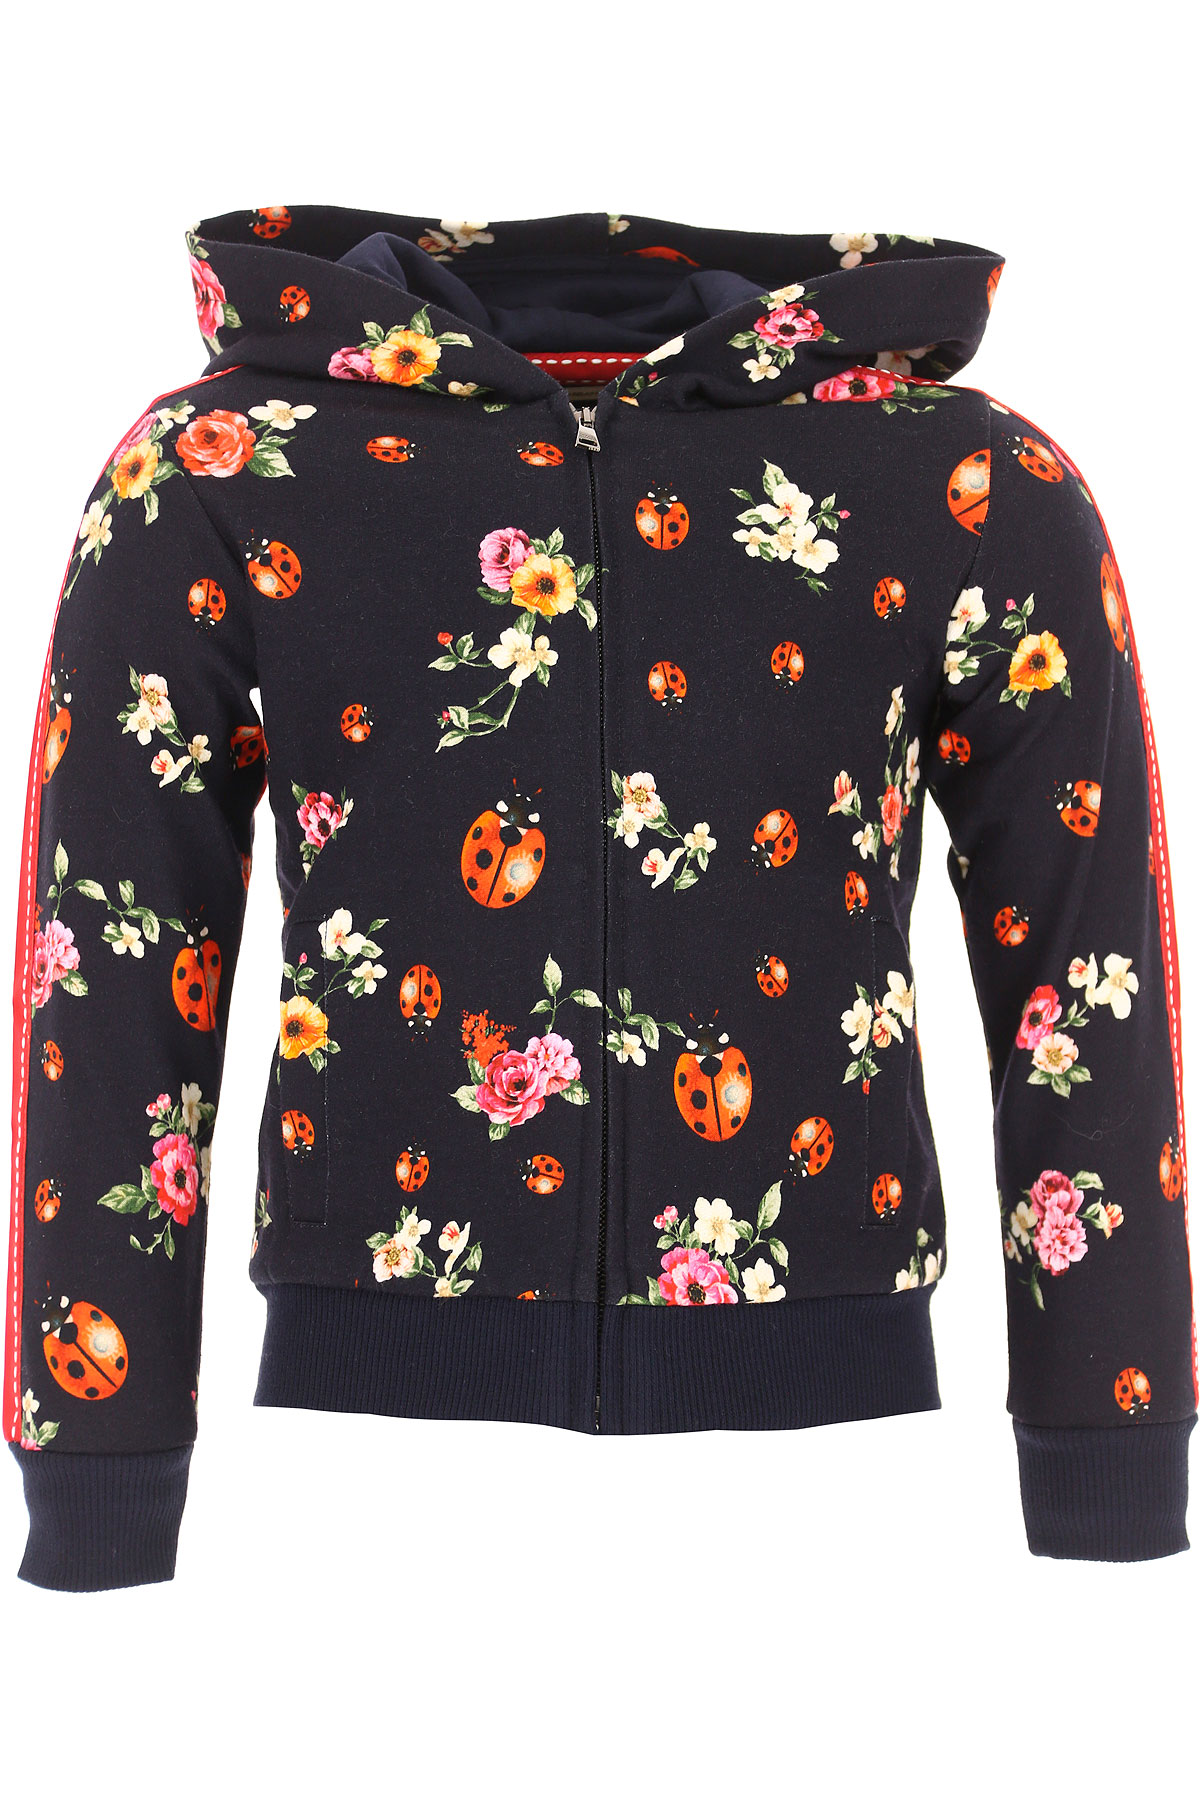 Dolce & Gabbana Sweatshirts et Hoodies Enfant pour Fille , Noir, Coton, 2017, 2Y 3Y 4Y 5Y 6Y 8Y